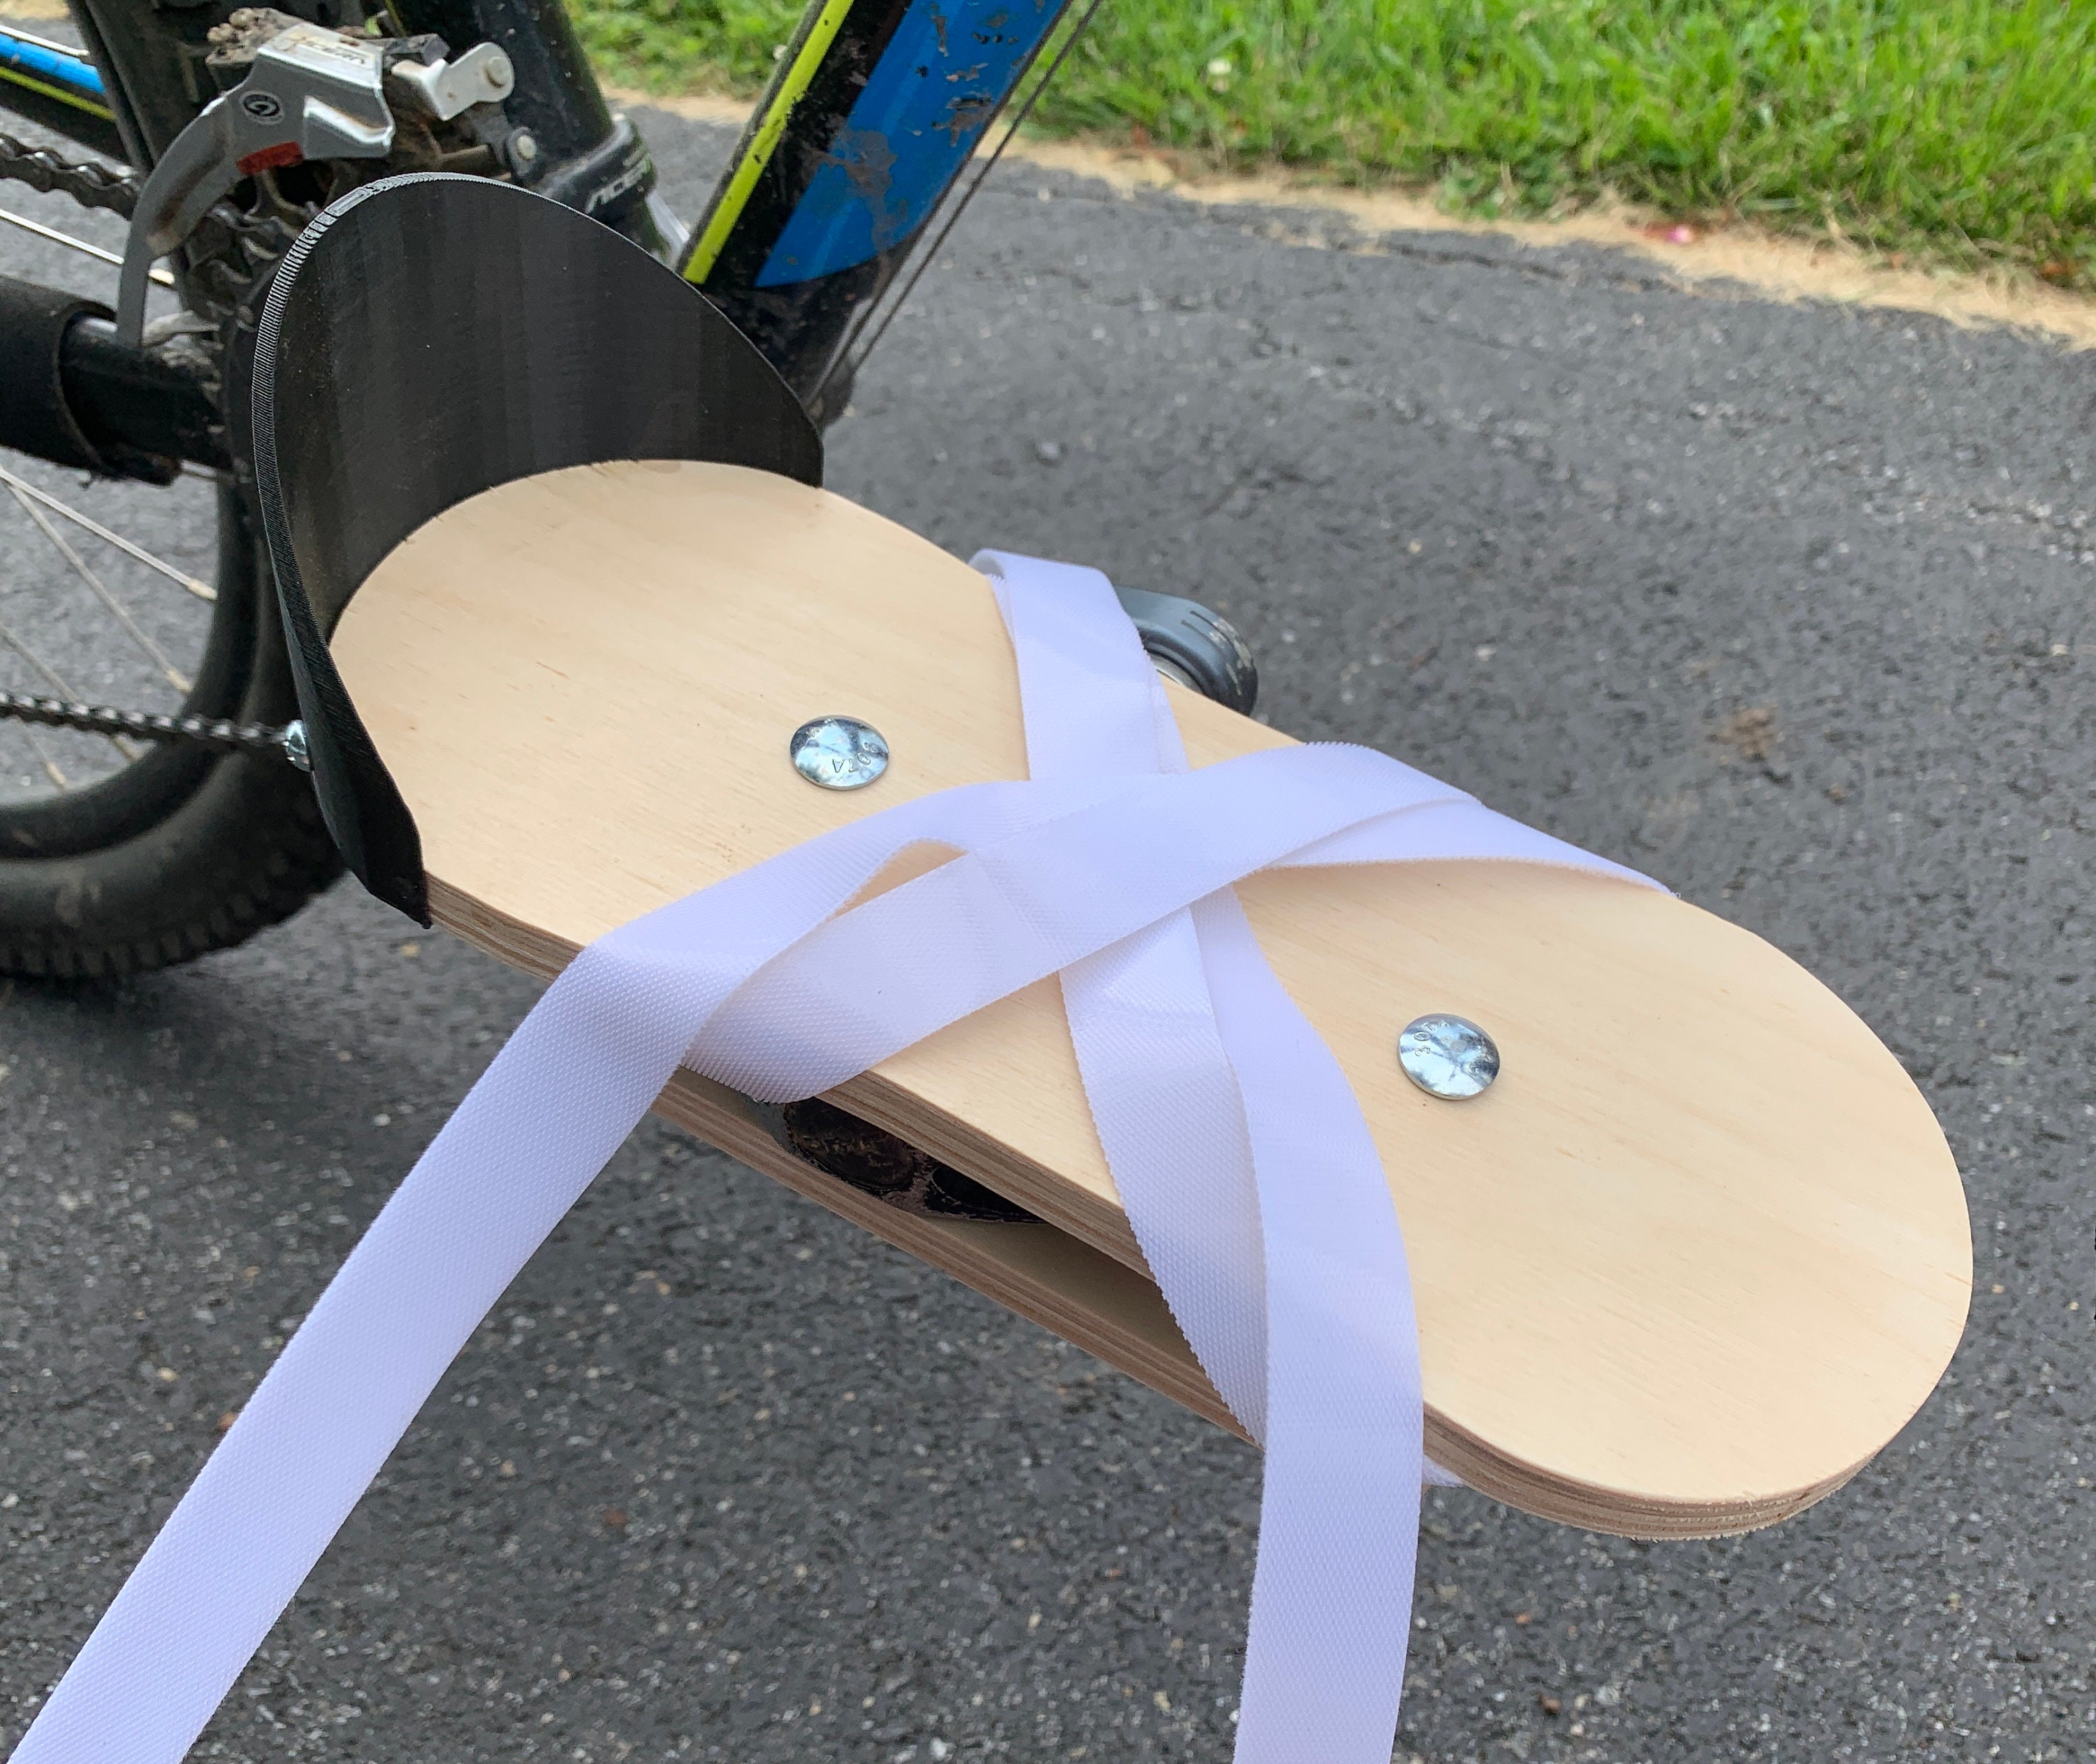 Pédale arrière de vélo pliante, coussin de pédale de siège arrière de vélo,  accessoires de siège arrière de vélo pour petite amie femme homme enfant